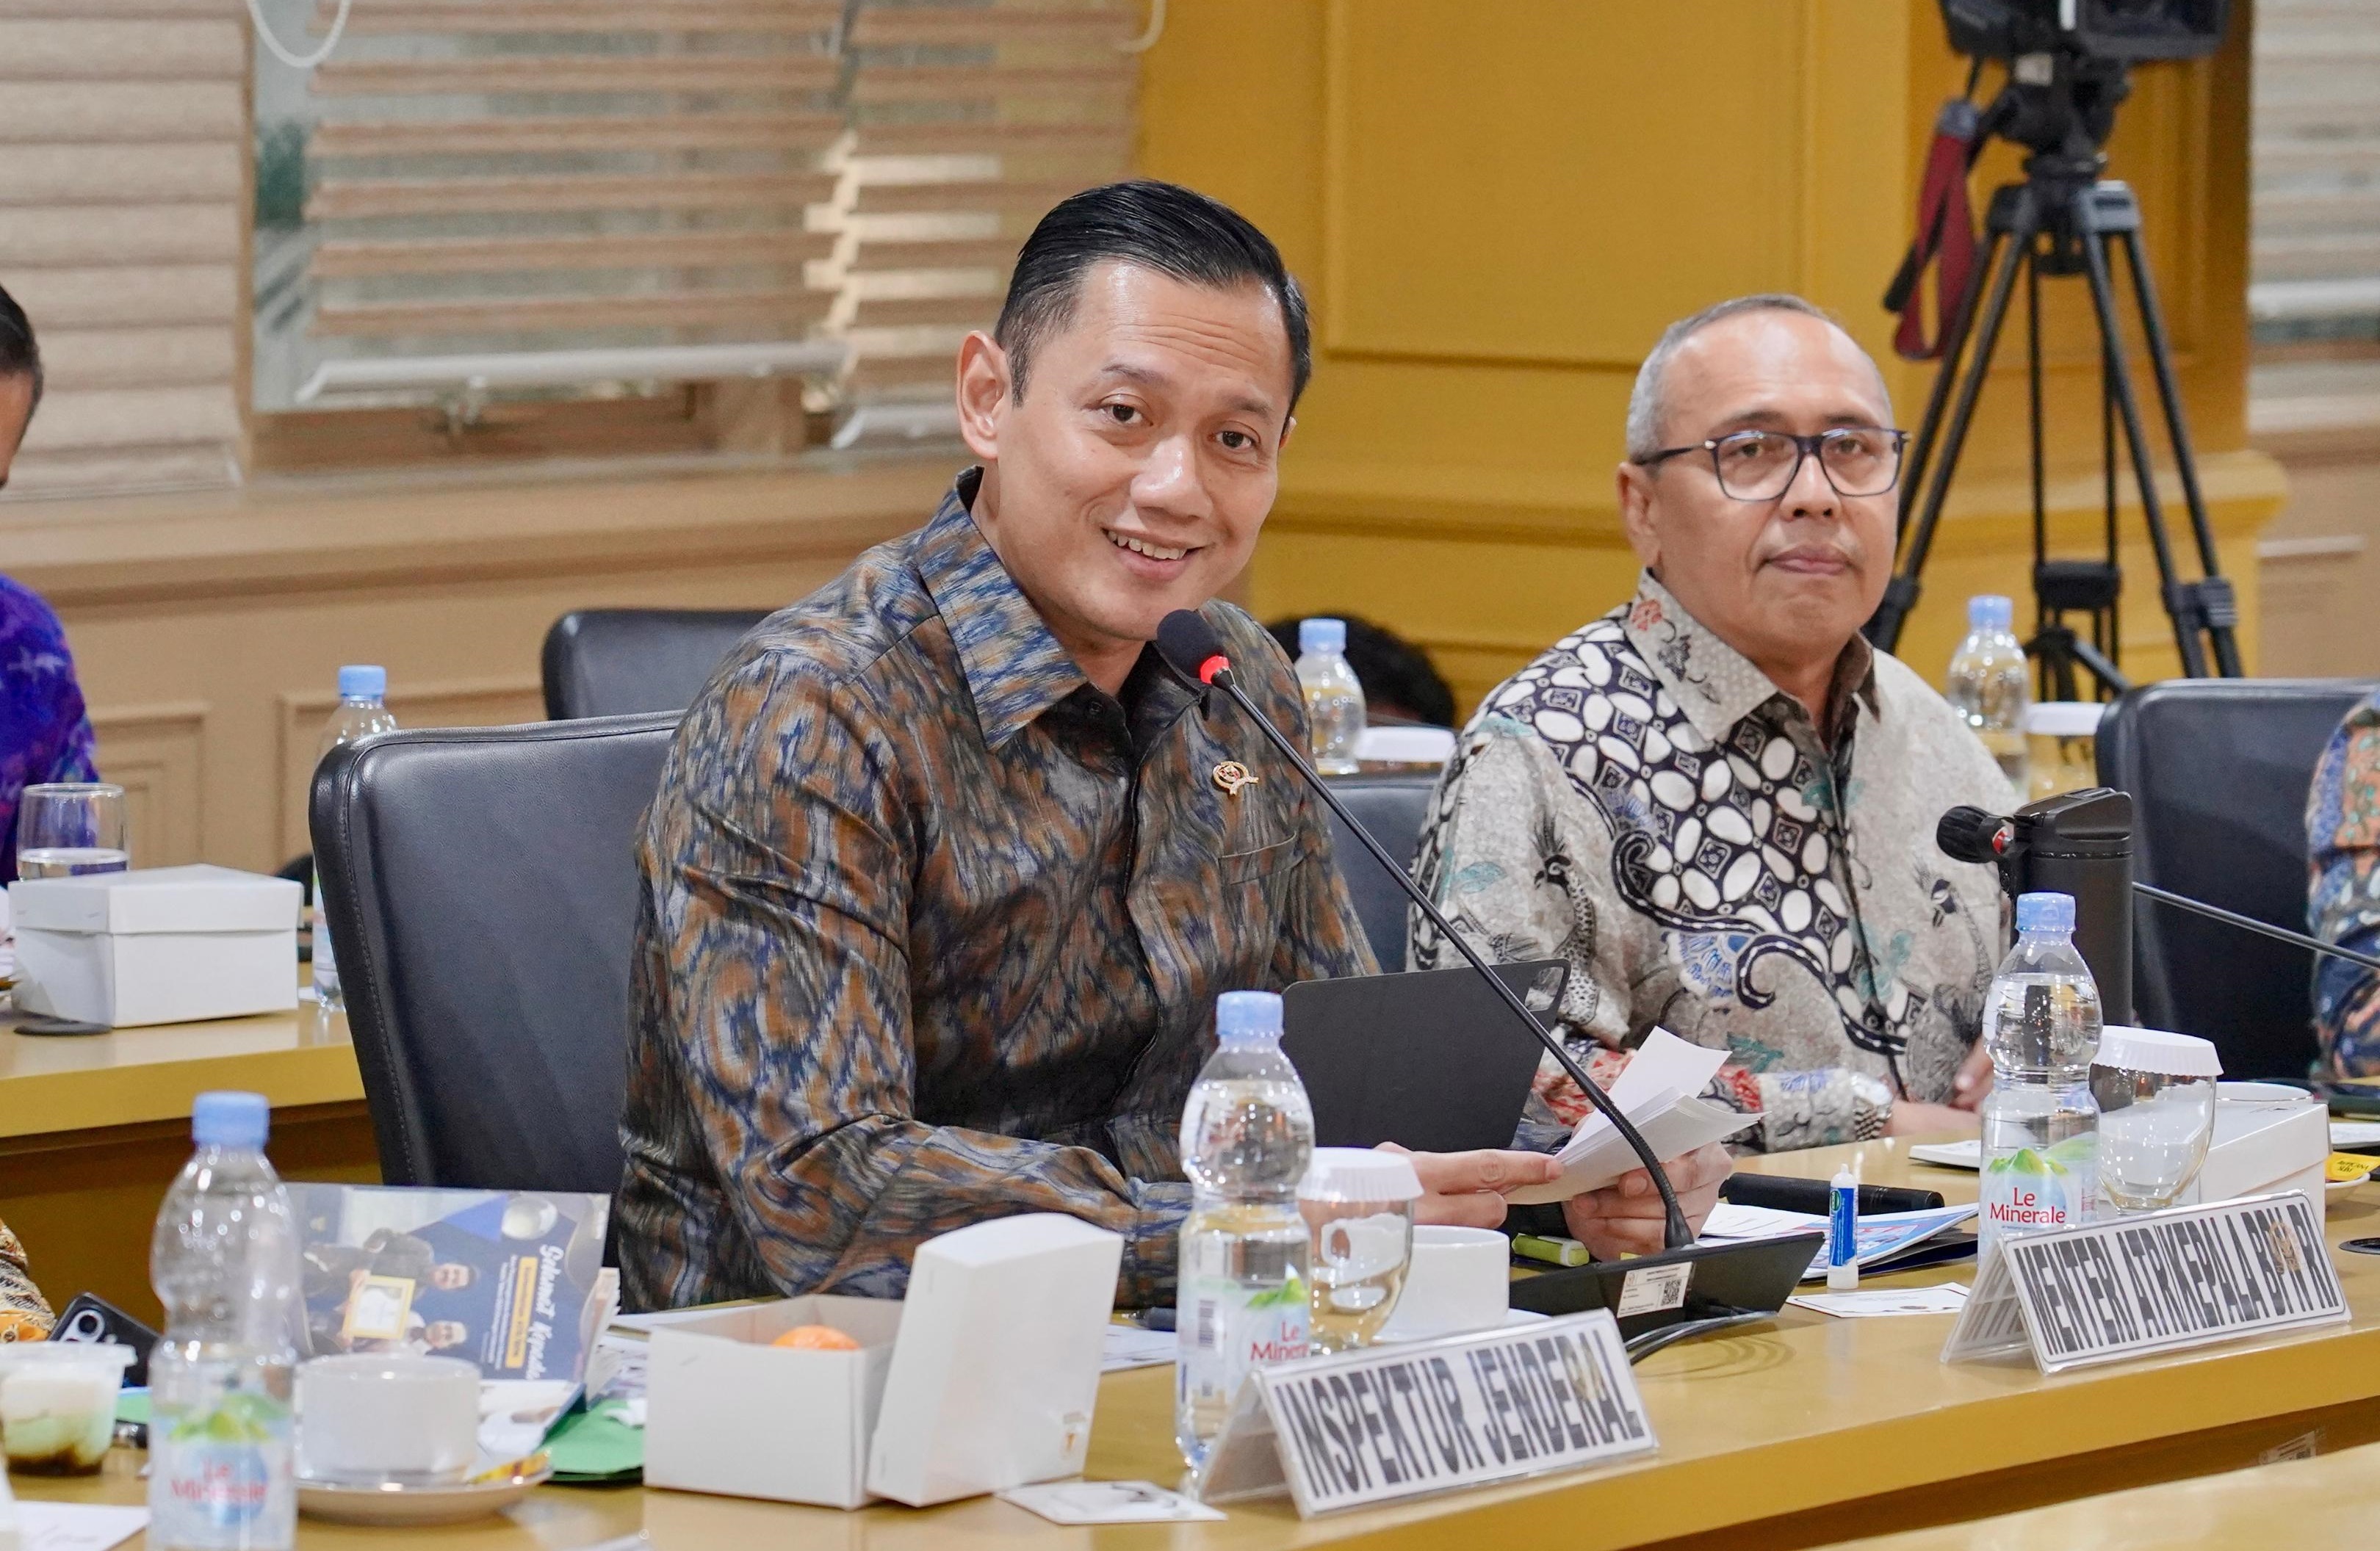 Rapat Kerja Bersama Komite I DPD RI, Menteri AHY: Keadilan untuk Semua, Kesejahteraan untuk Semua